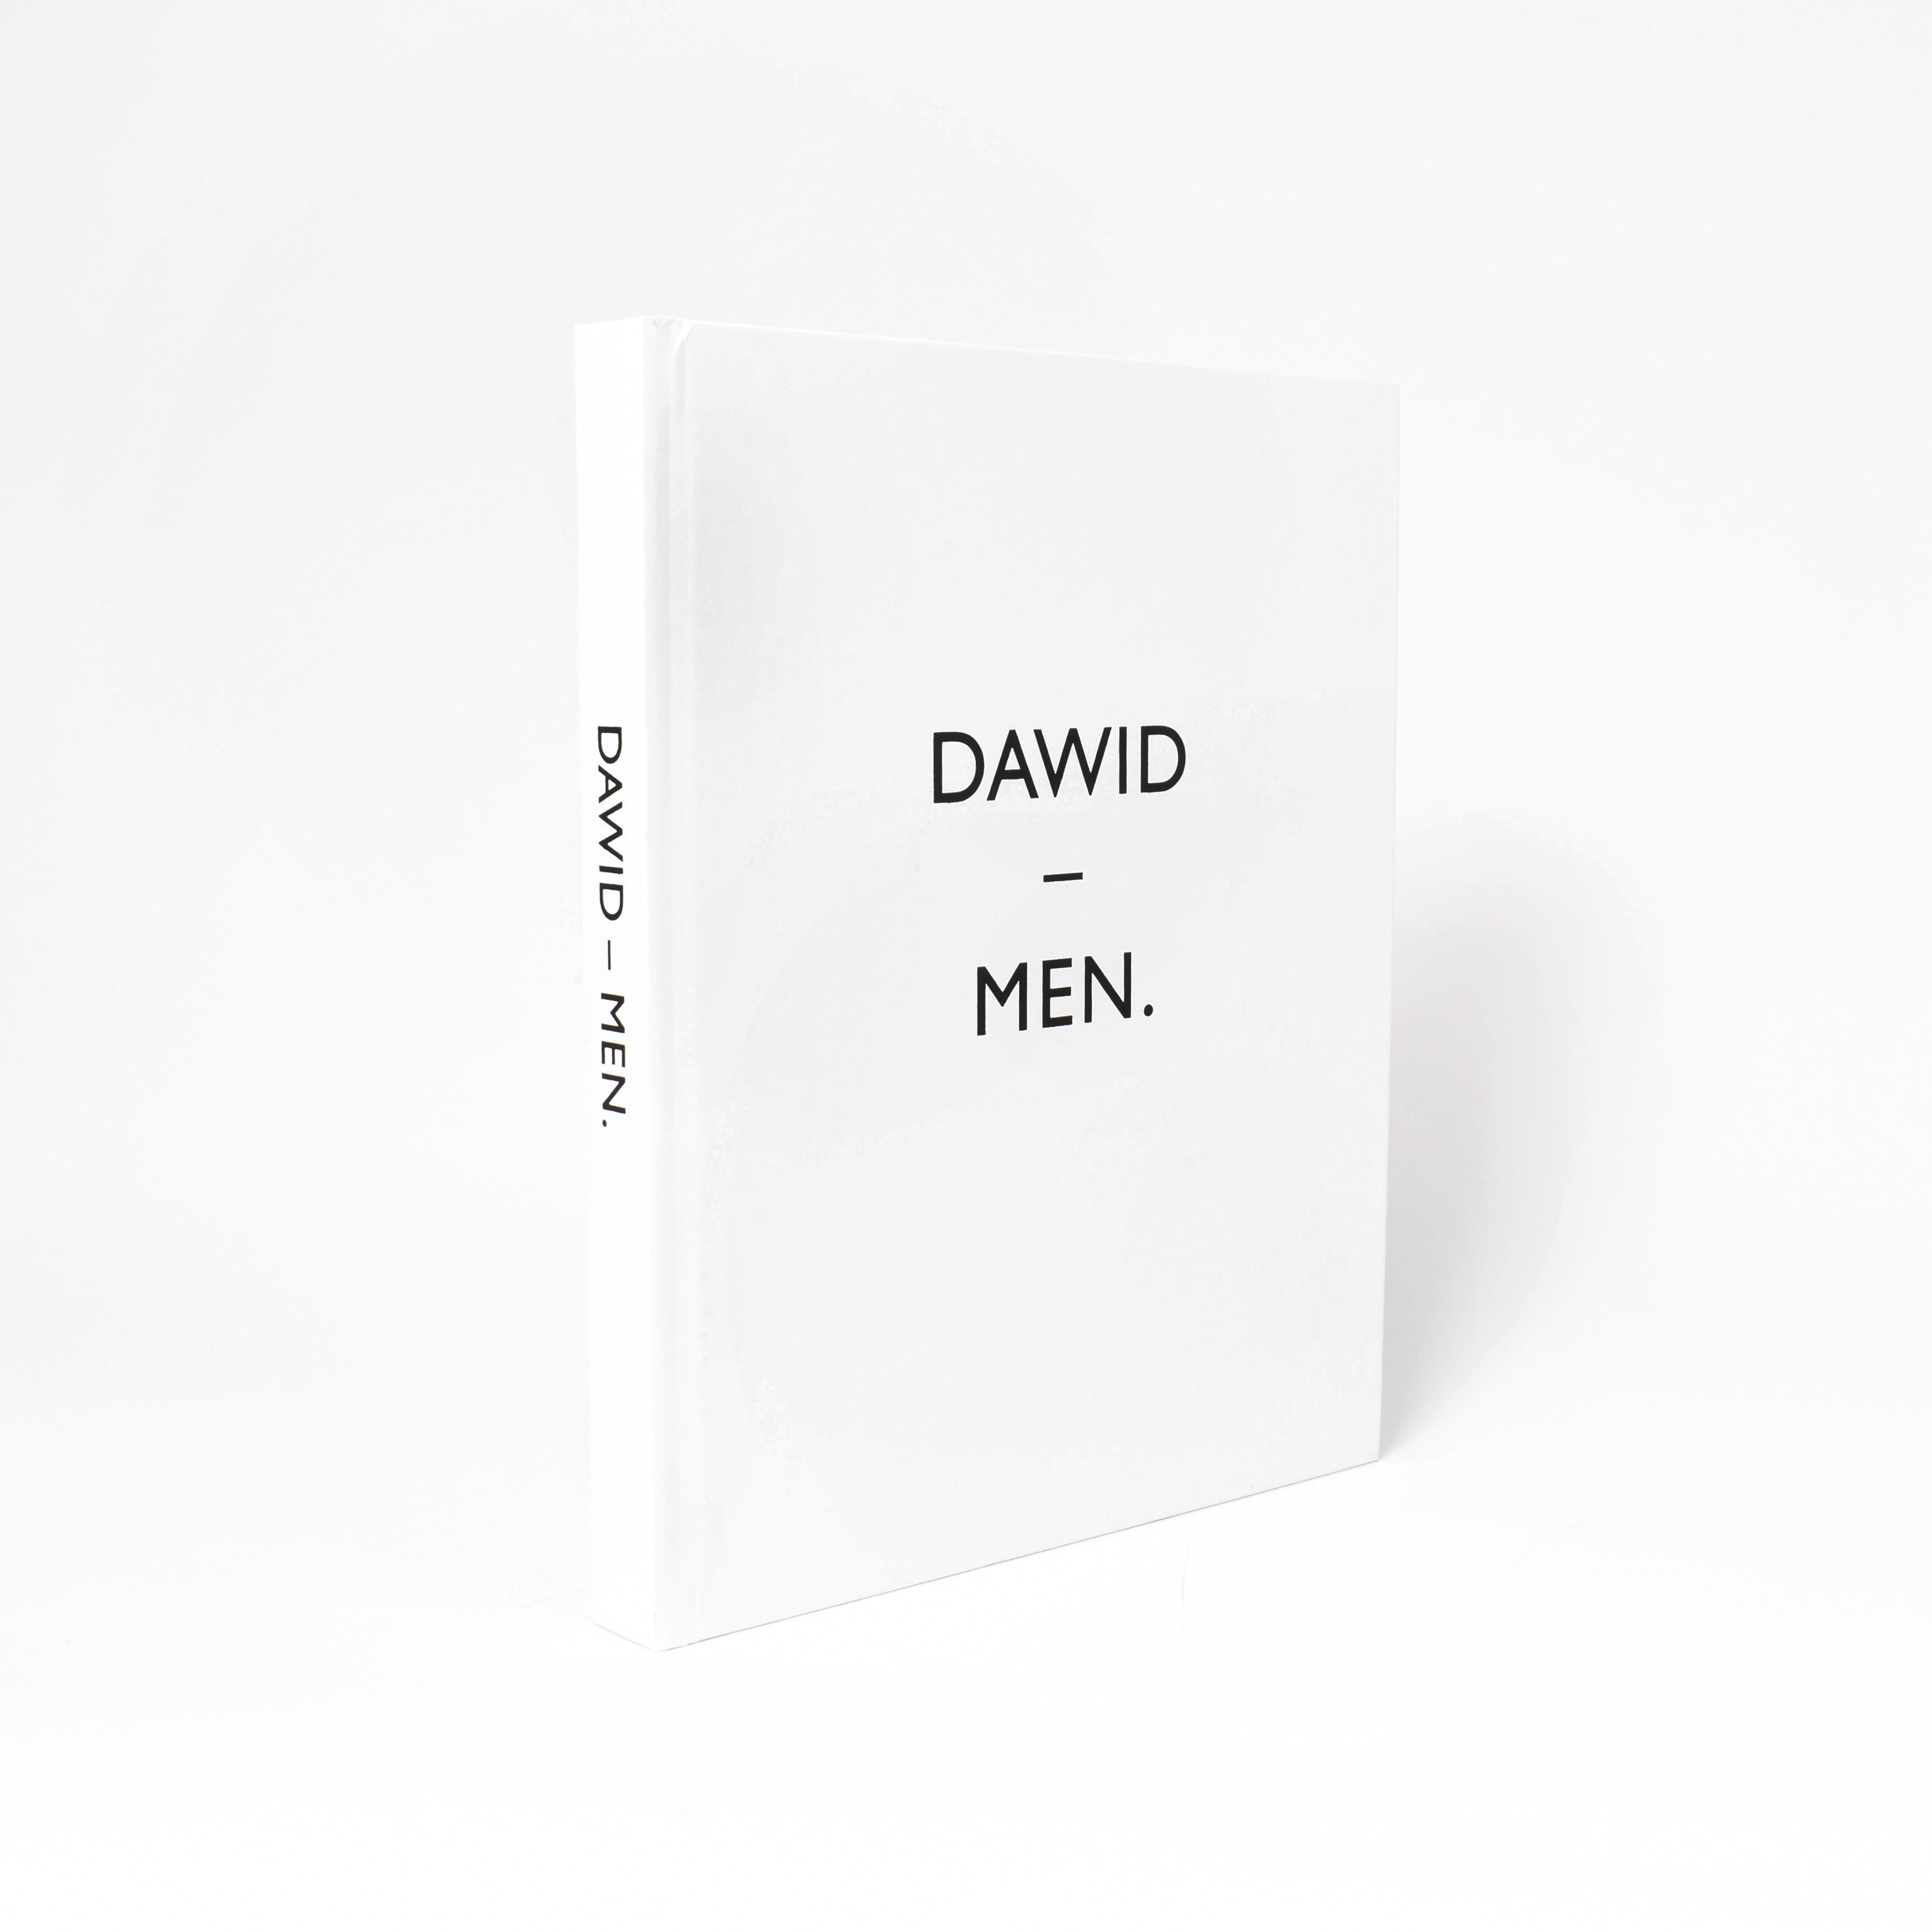 vitt omslag till boken dawid-men med titel i svart